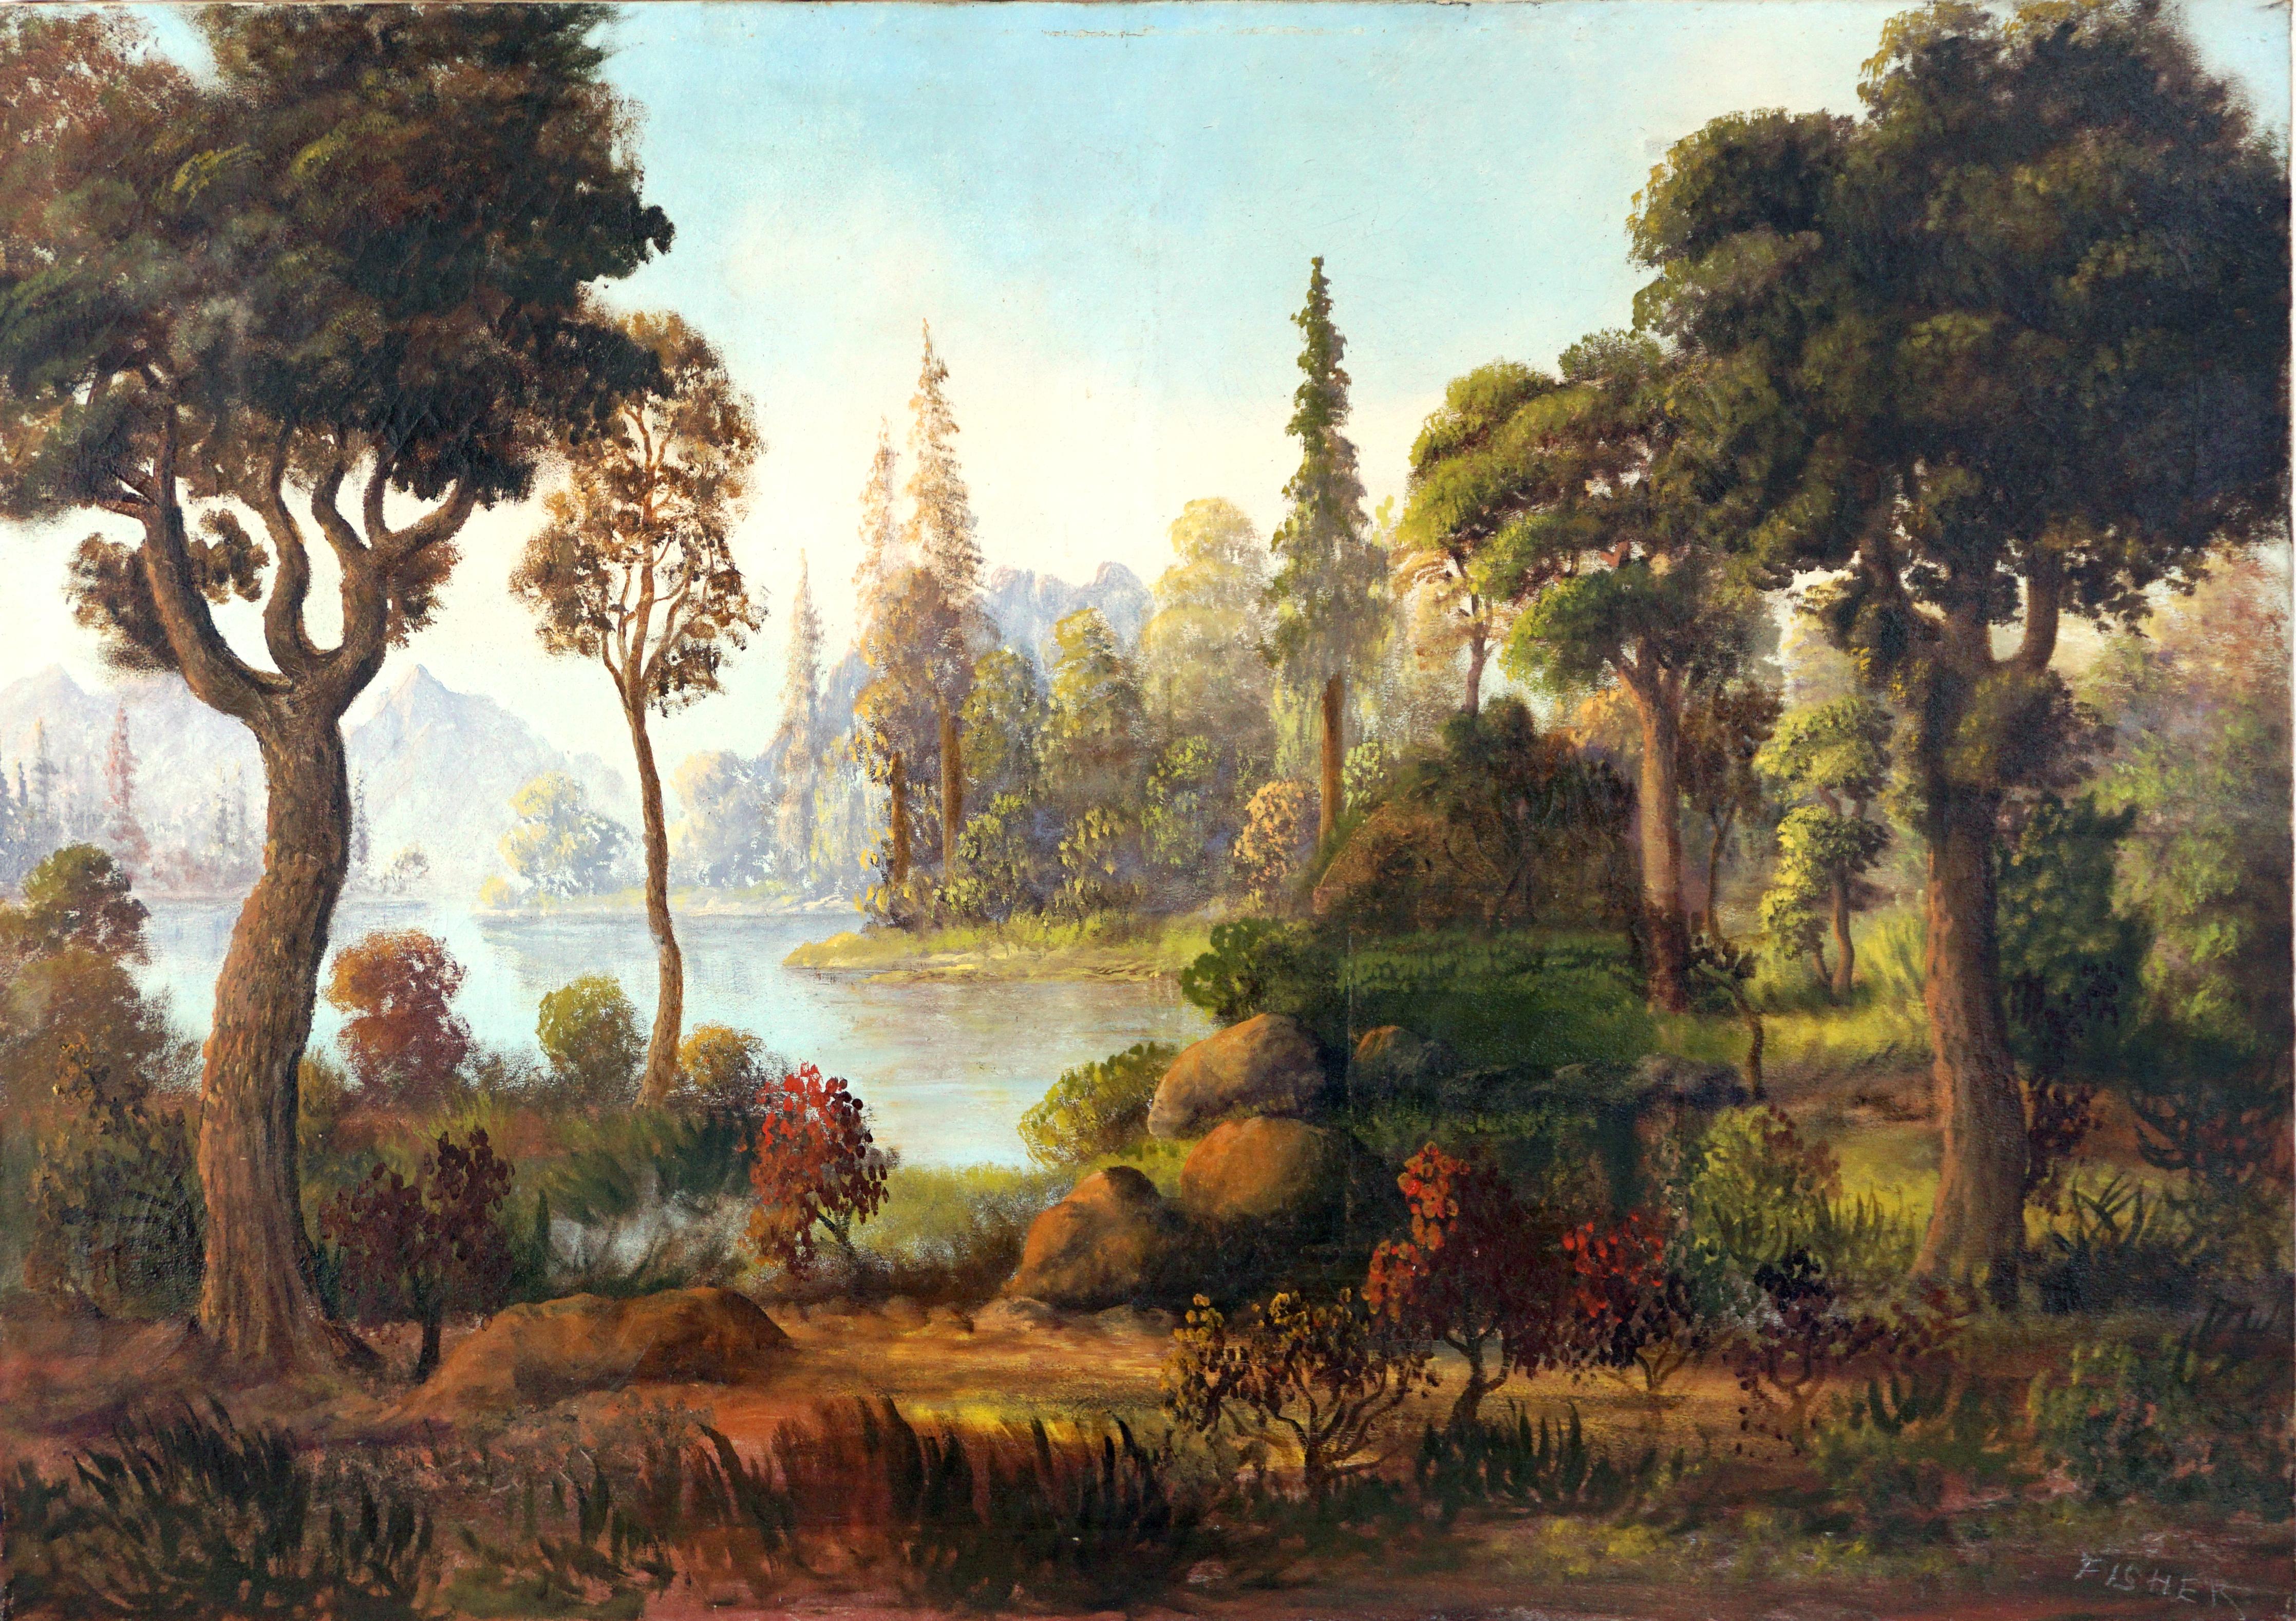 Paysage d'automne en bord de lac de l'Hudson River School, début du 20e siècle - Painting de Fisher